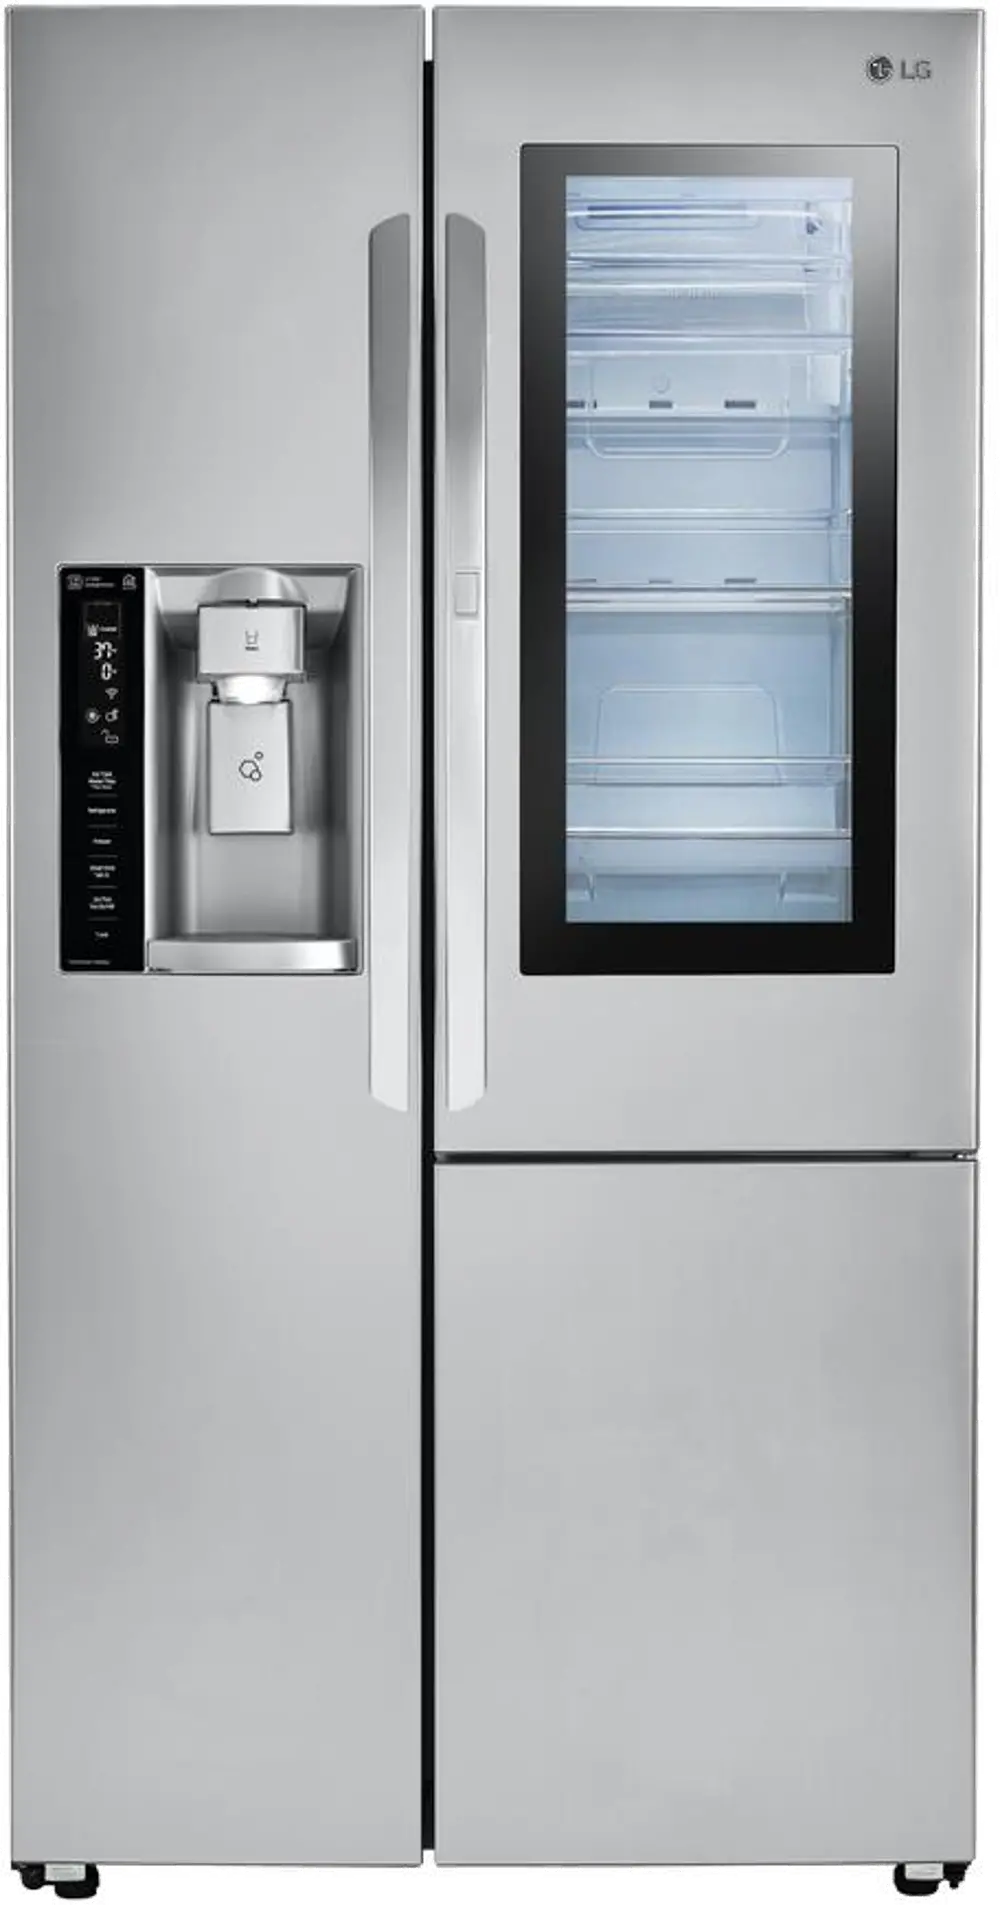 LSXS26396S LG Side by Side Door-in-Door Smart Refrigerator - 26.1 cu. ft., 36 Inch Stainless Steel-1